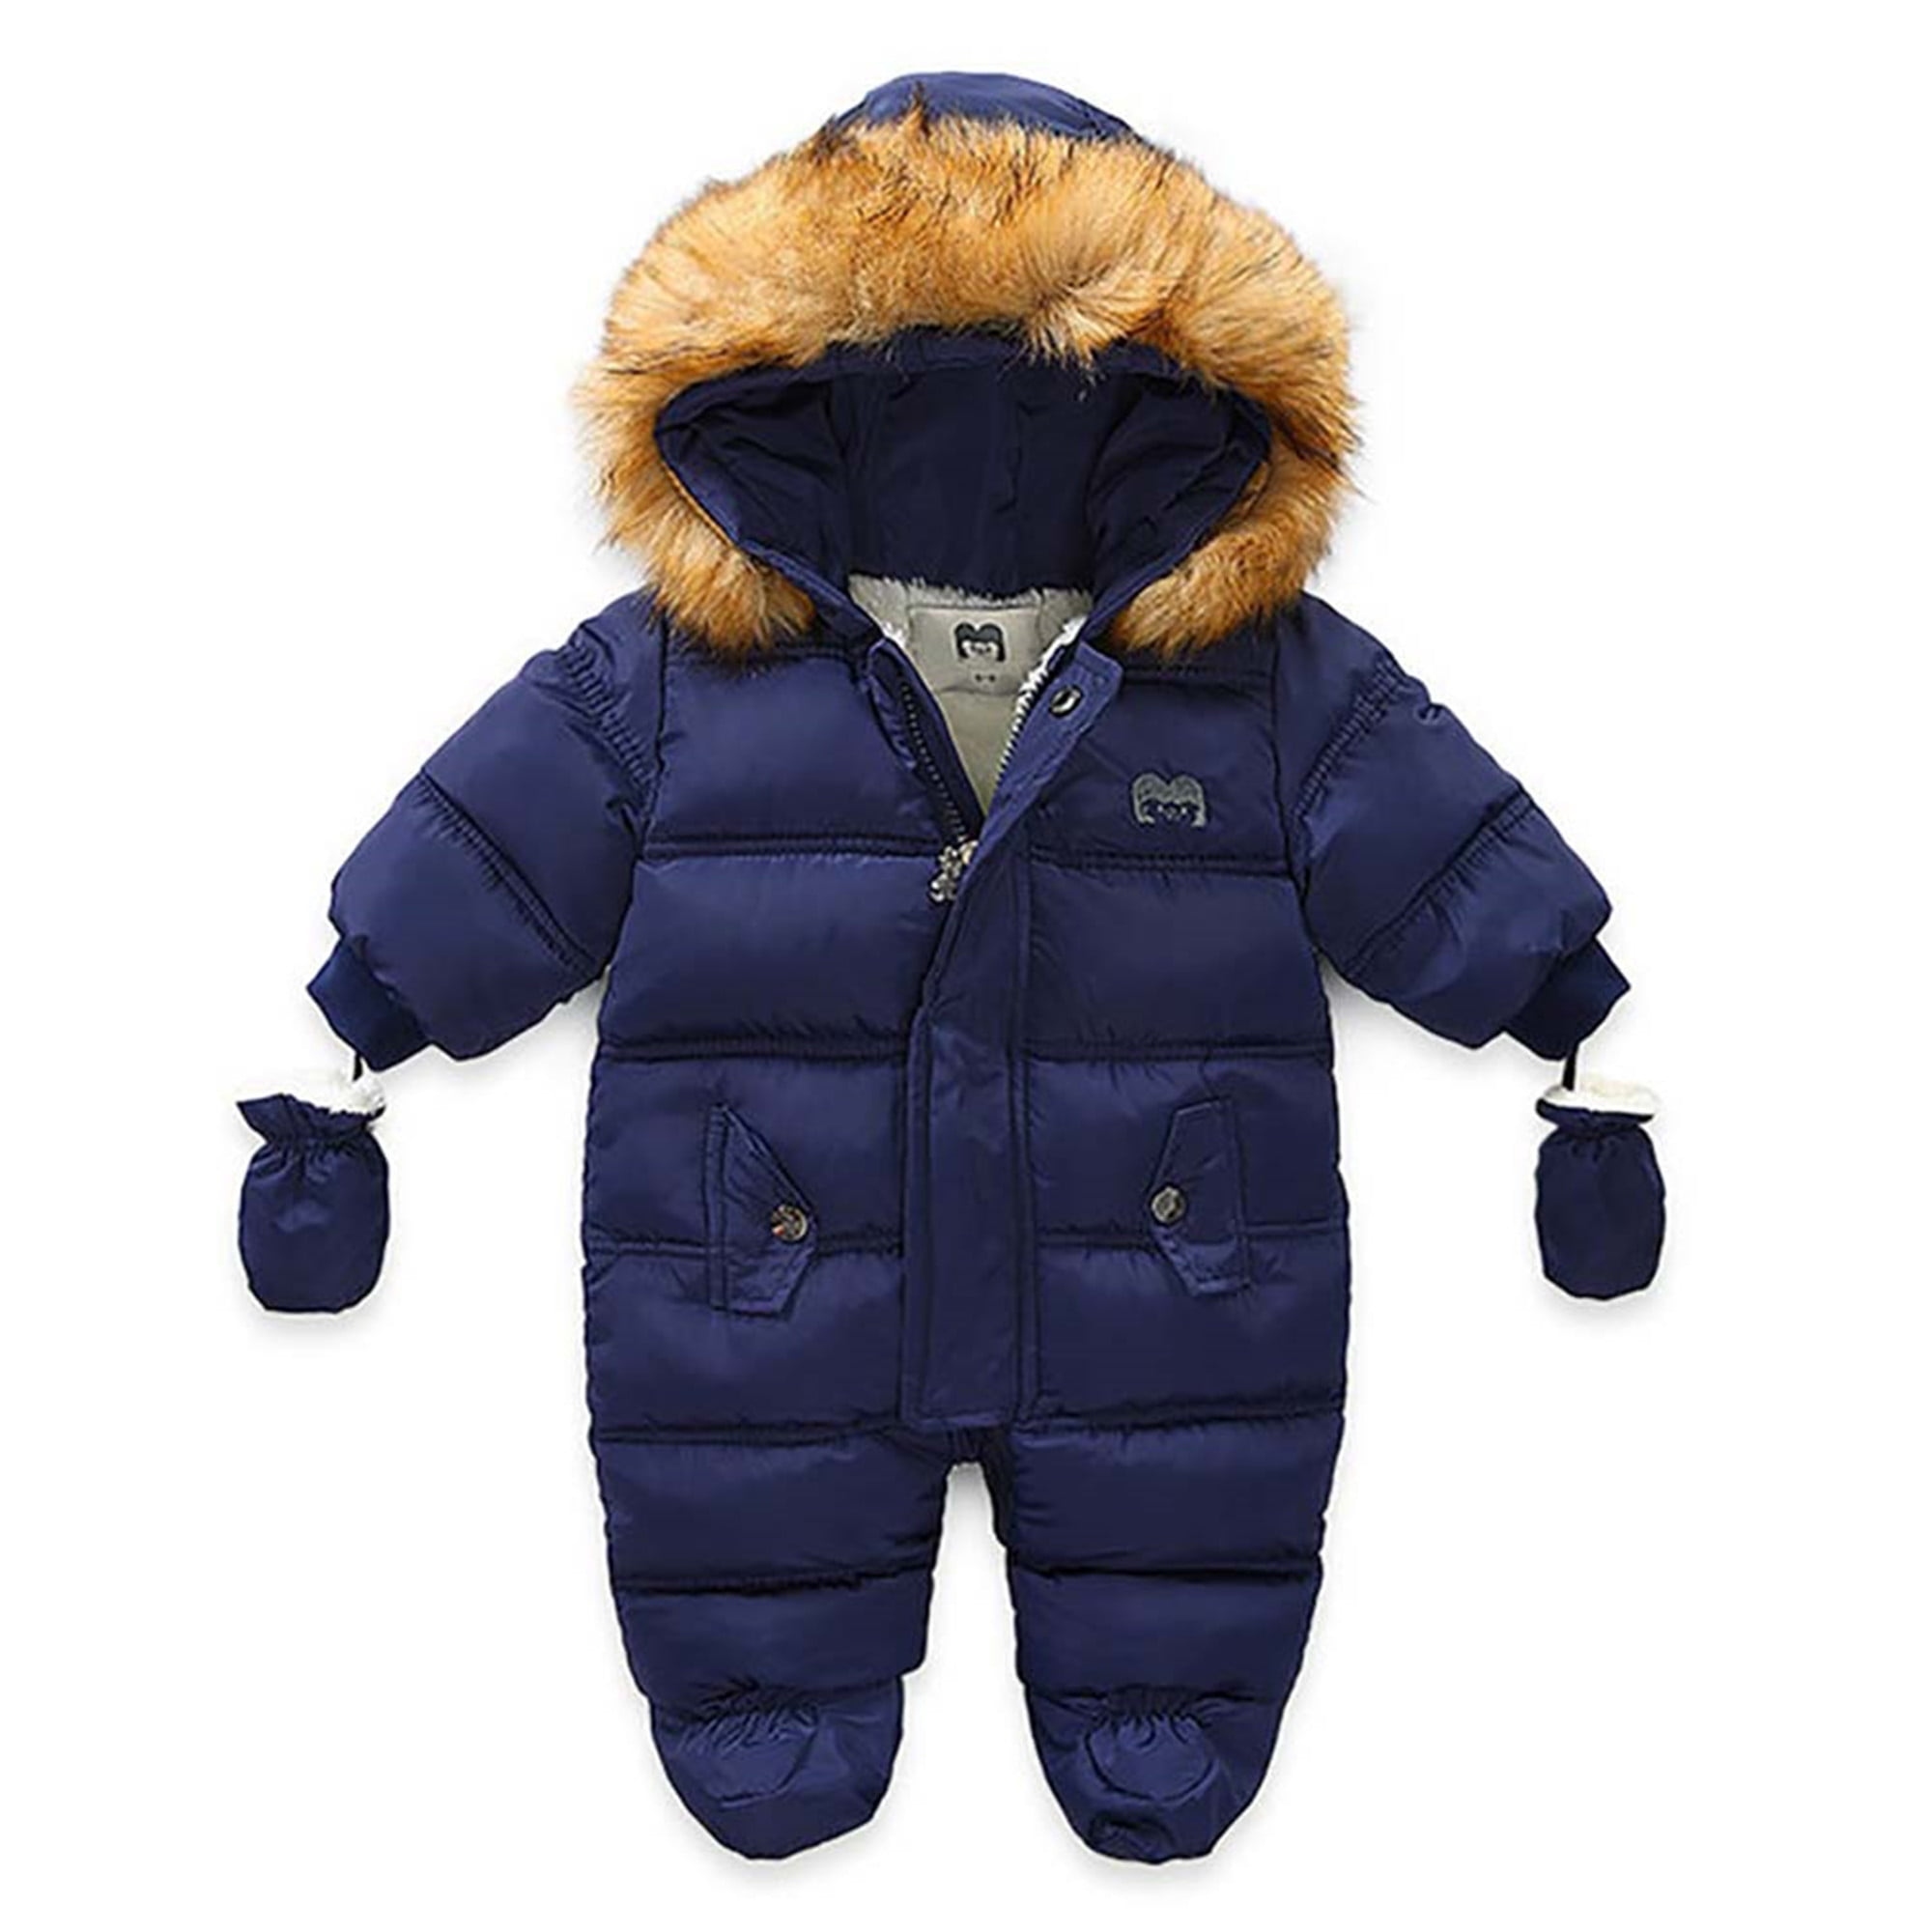 Baby Fleece Knitted Romper Jumpsuit Knitwear Bodysuit Winter Coat Snowsuit for Infant Boy Girl